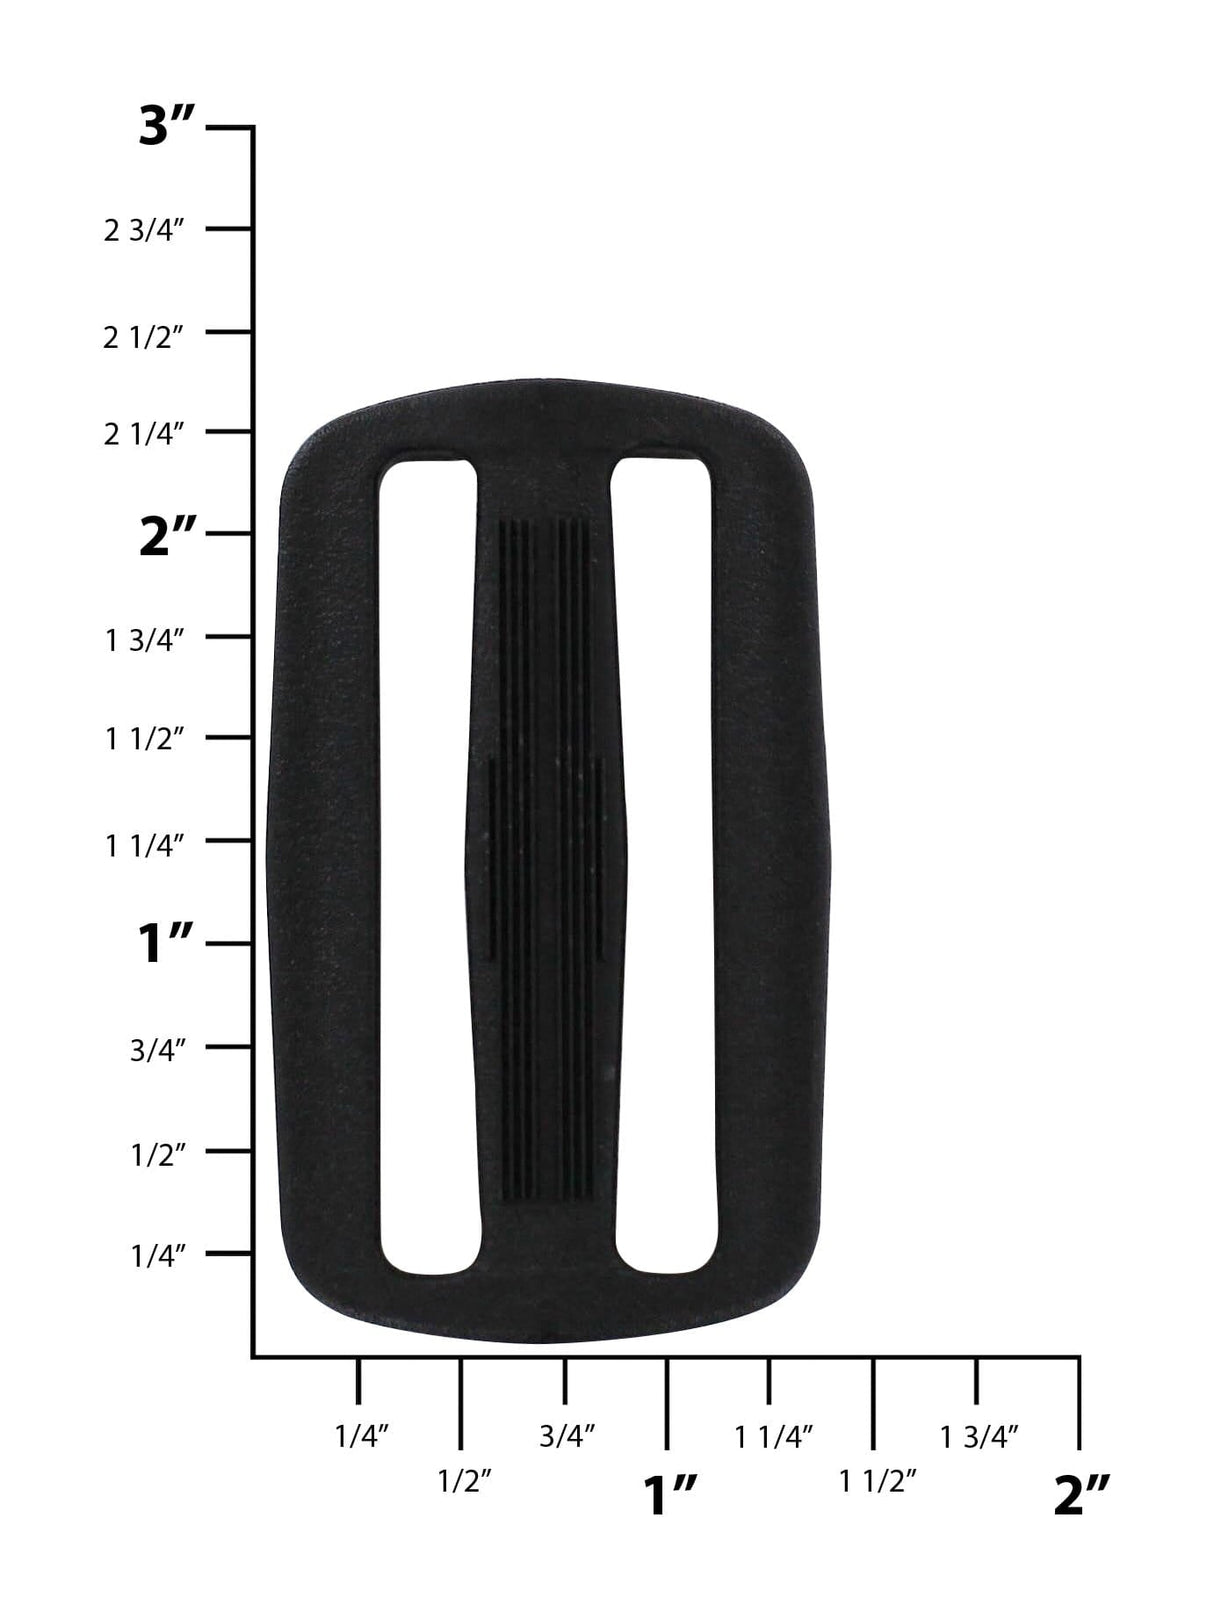 Ohio Travel Bag Rings & Slides 2" Black, Sliplock, Plastic, #SL-2 SL-2